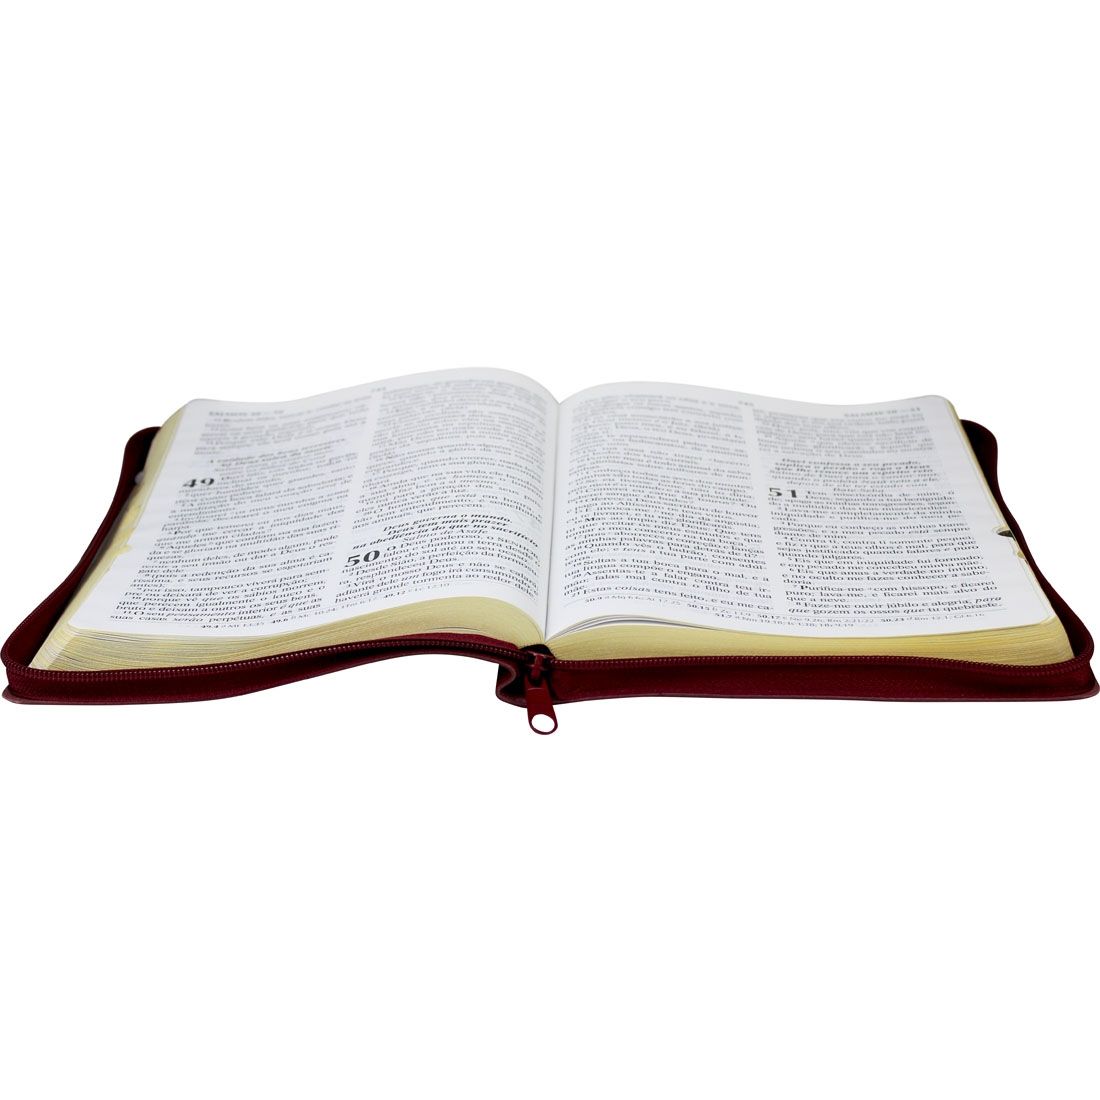 Bíblia Sagrada Letra Gigante, Edição com Letras Vermelhas com Harpa Cristã - Universo Bíblico Rs